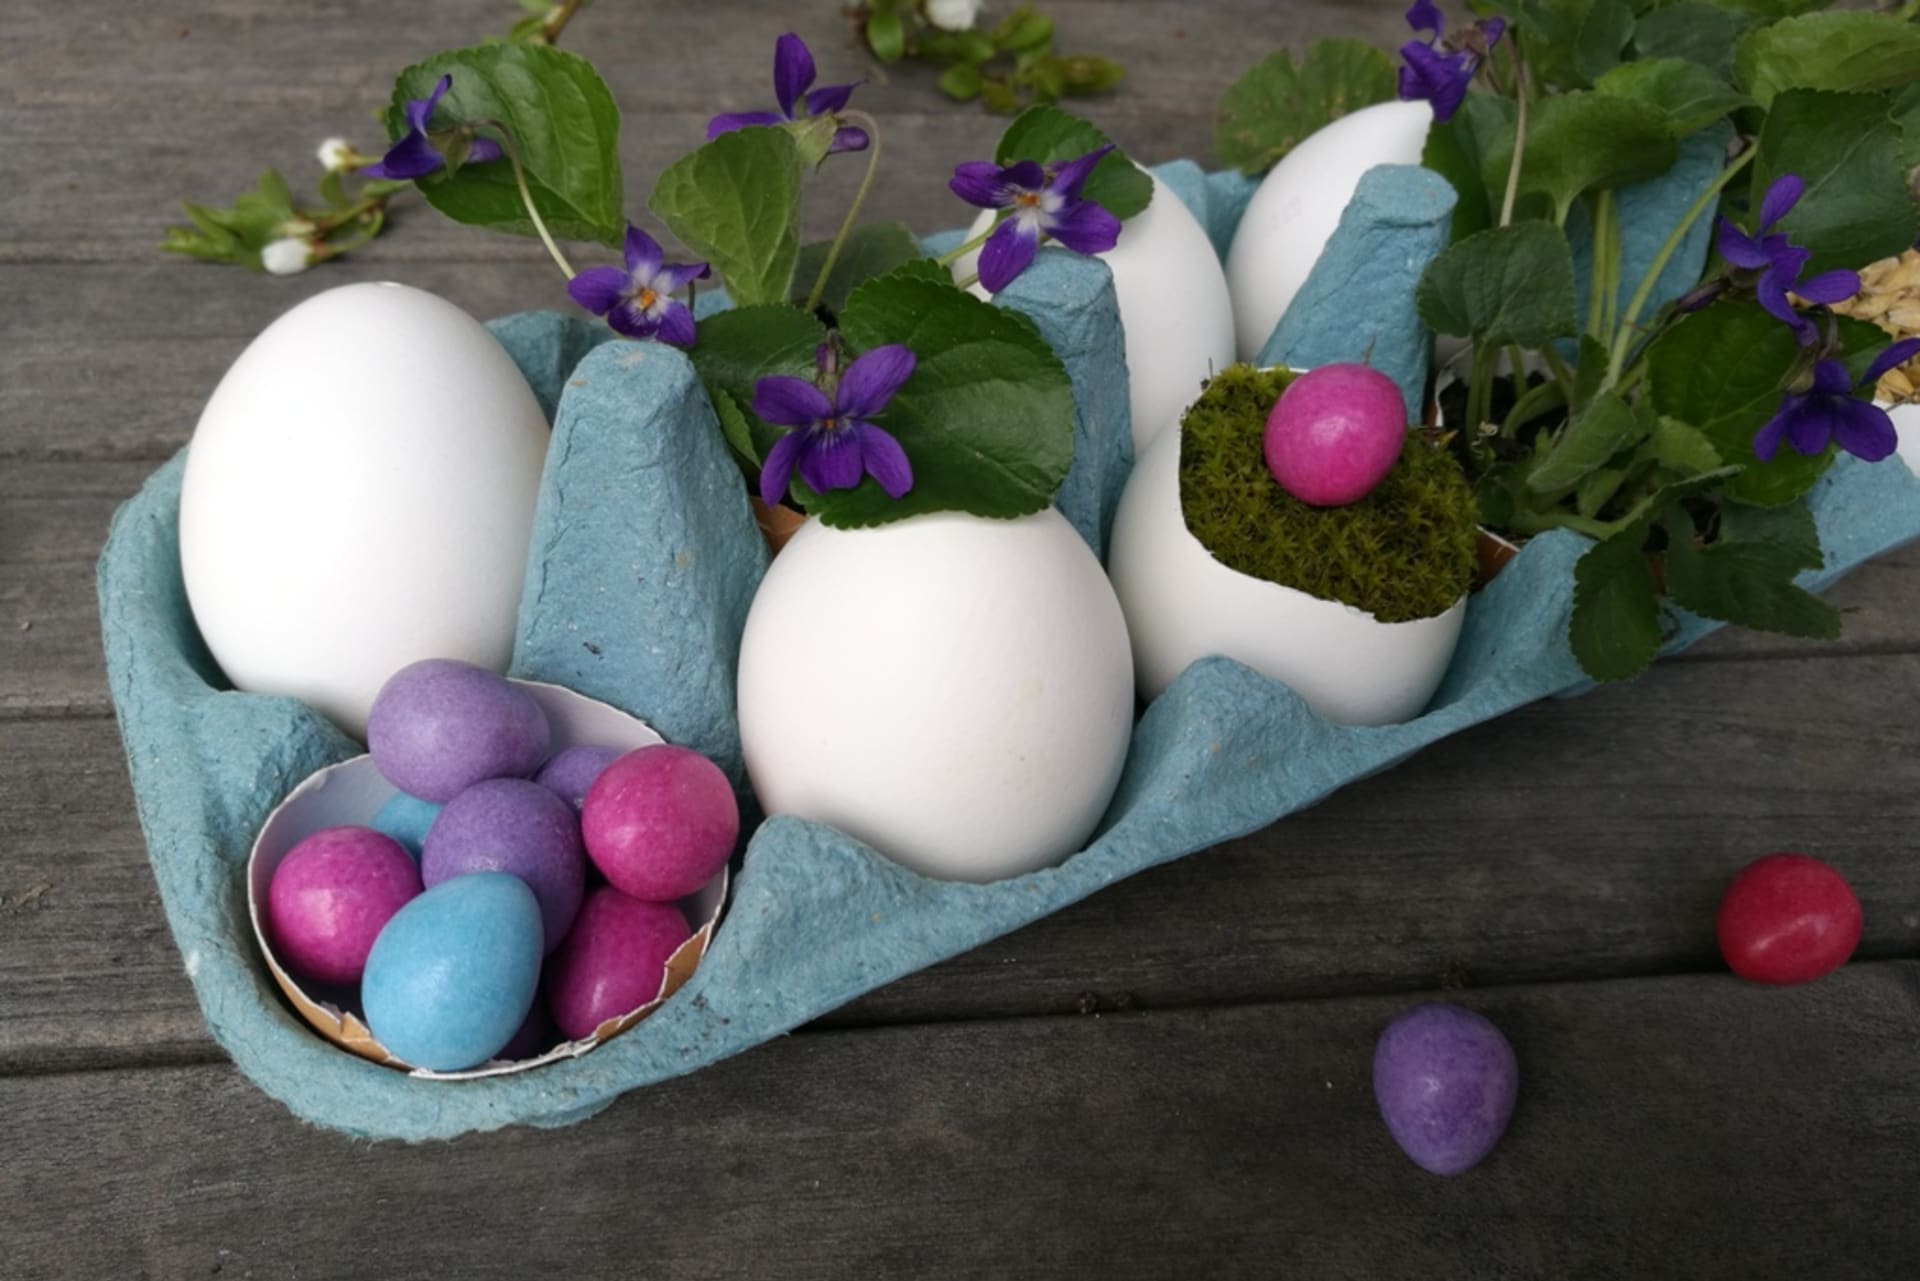 Barevná vajíčka jsou ve skutečnosti oblíbené cukrovinky